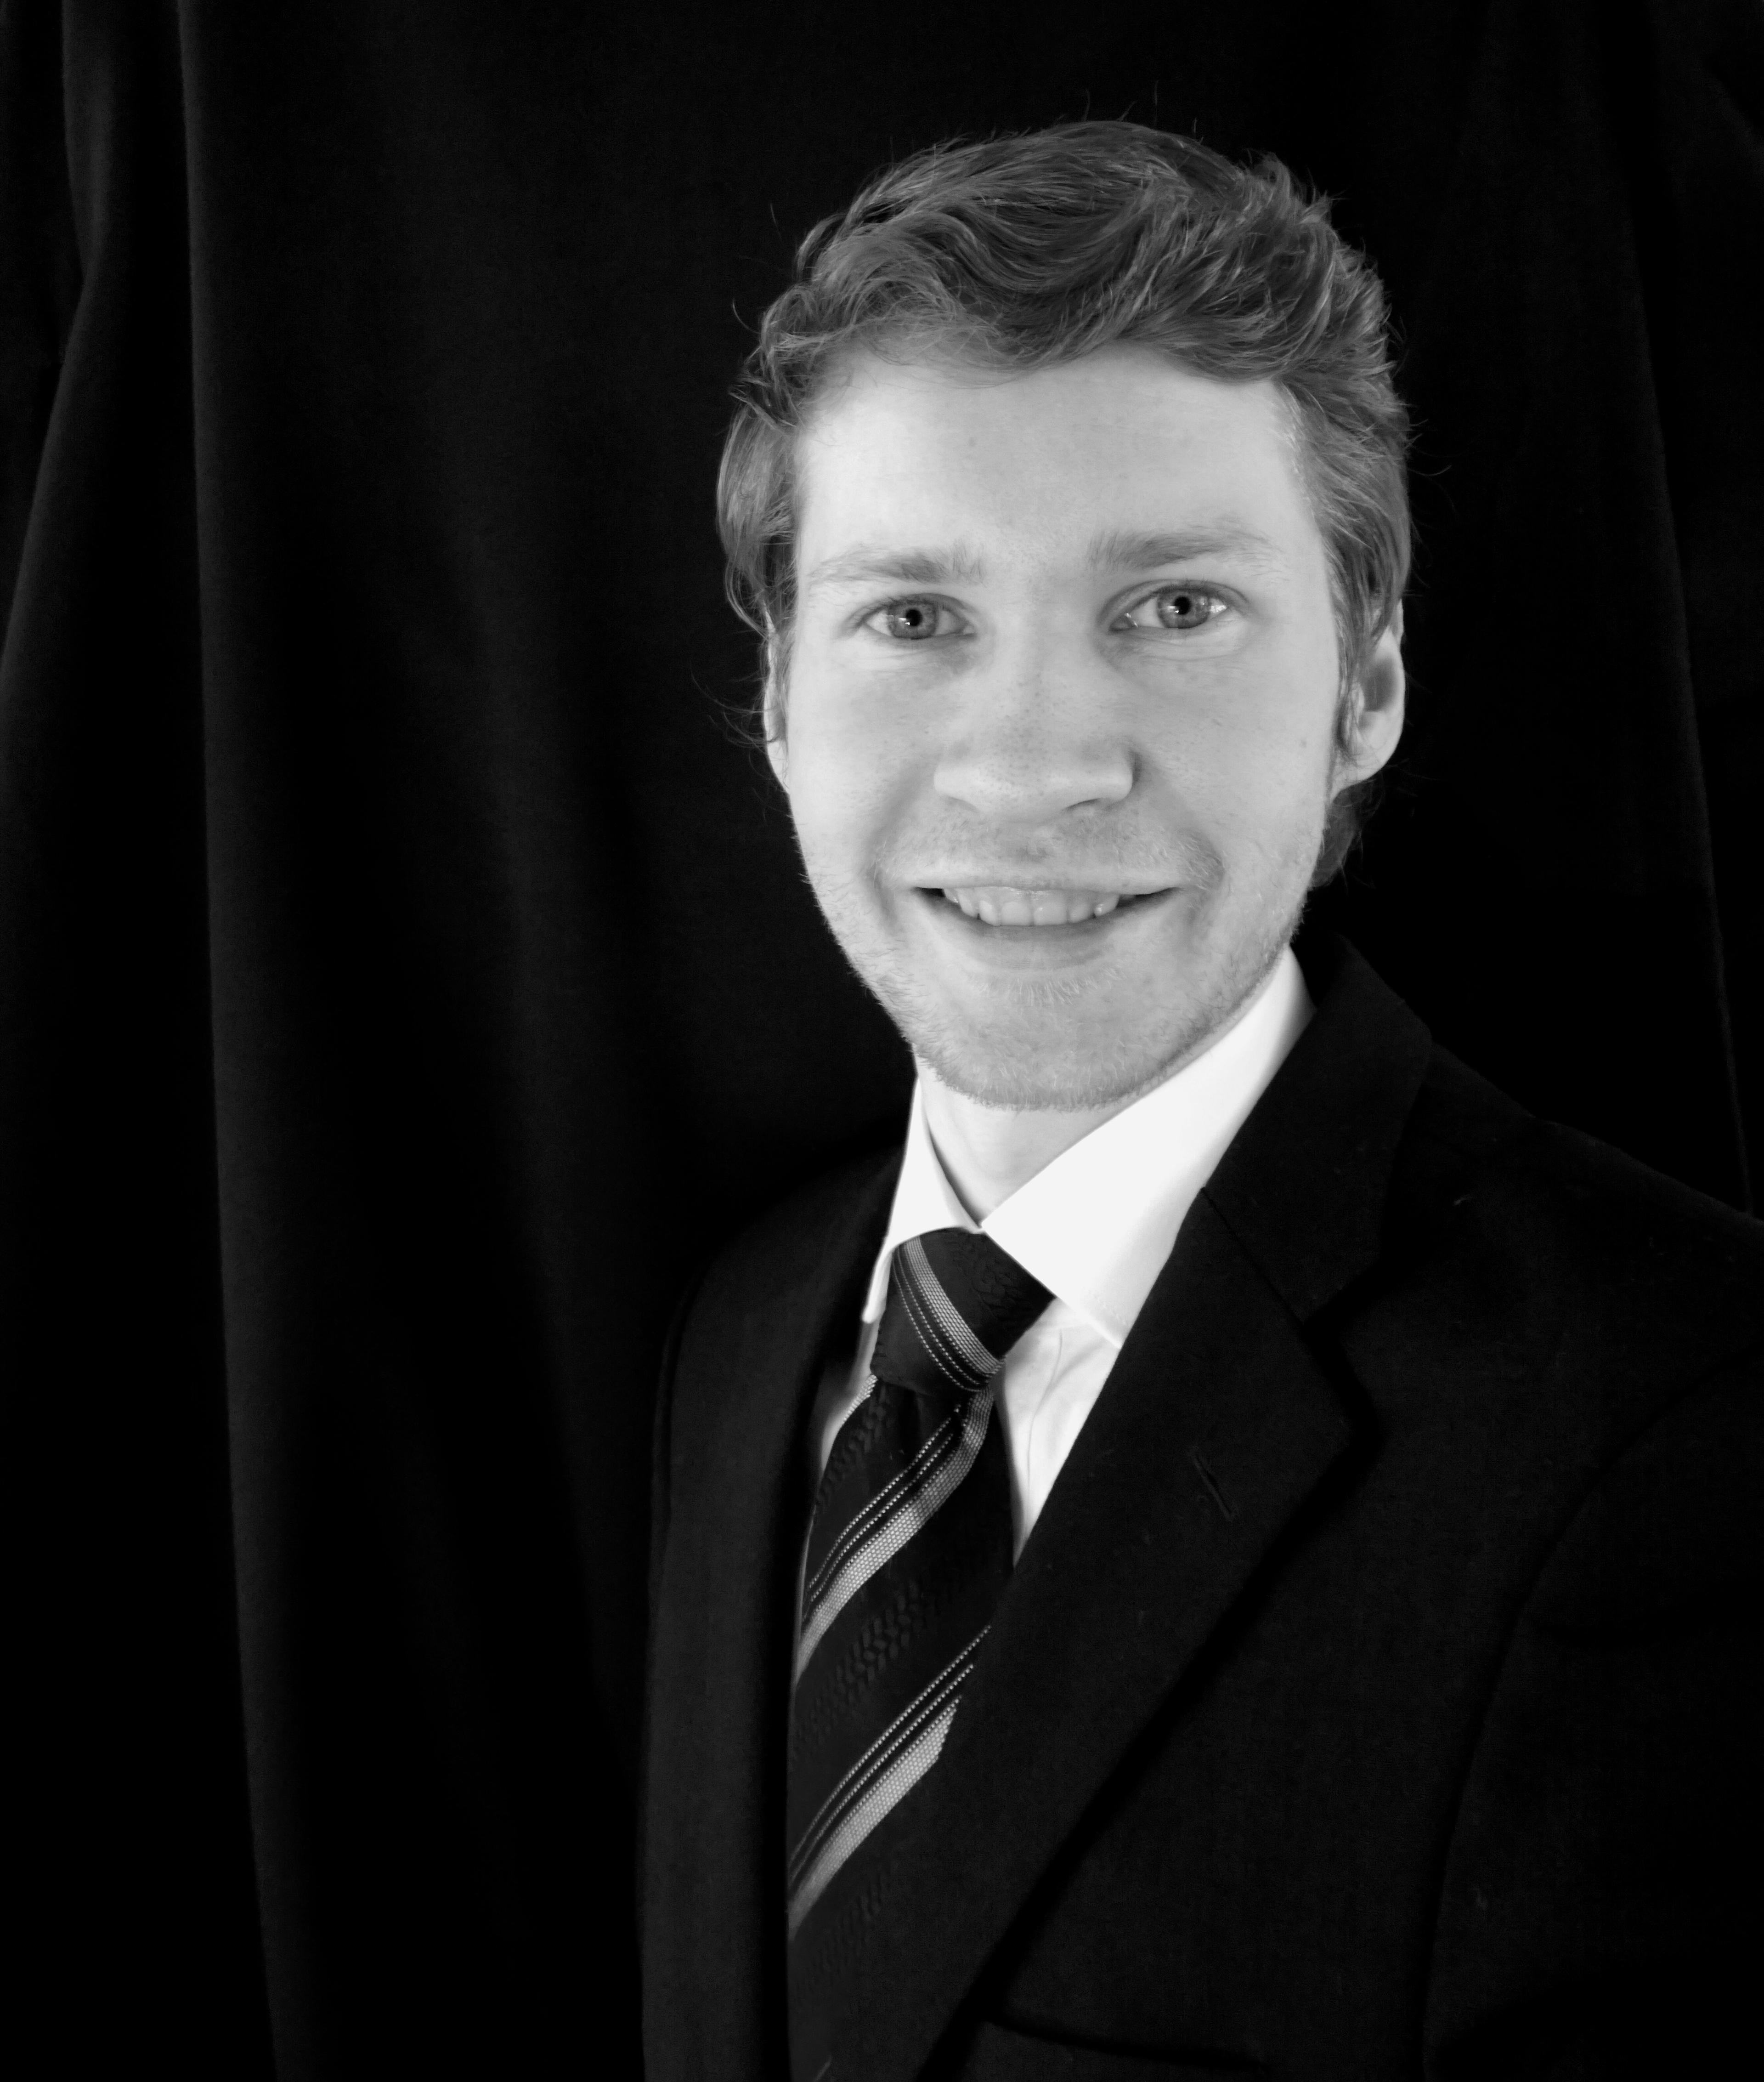 Et portrett av pianist Jørn Skauge som ser rett i kamera og smiler, ikledt en sort dress med slips.